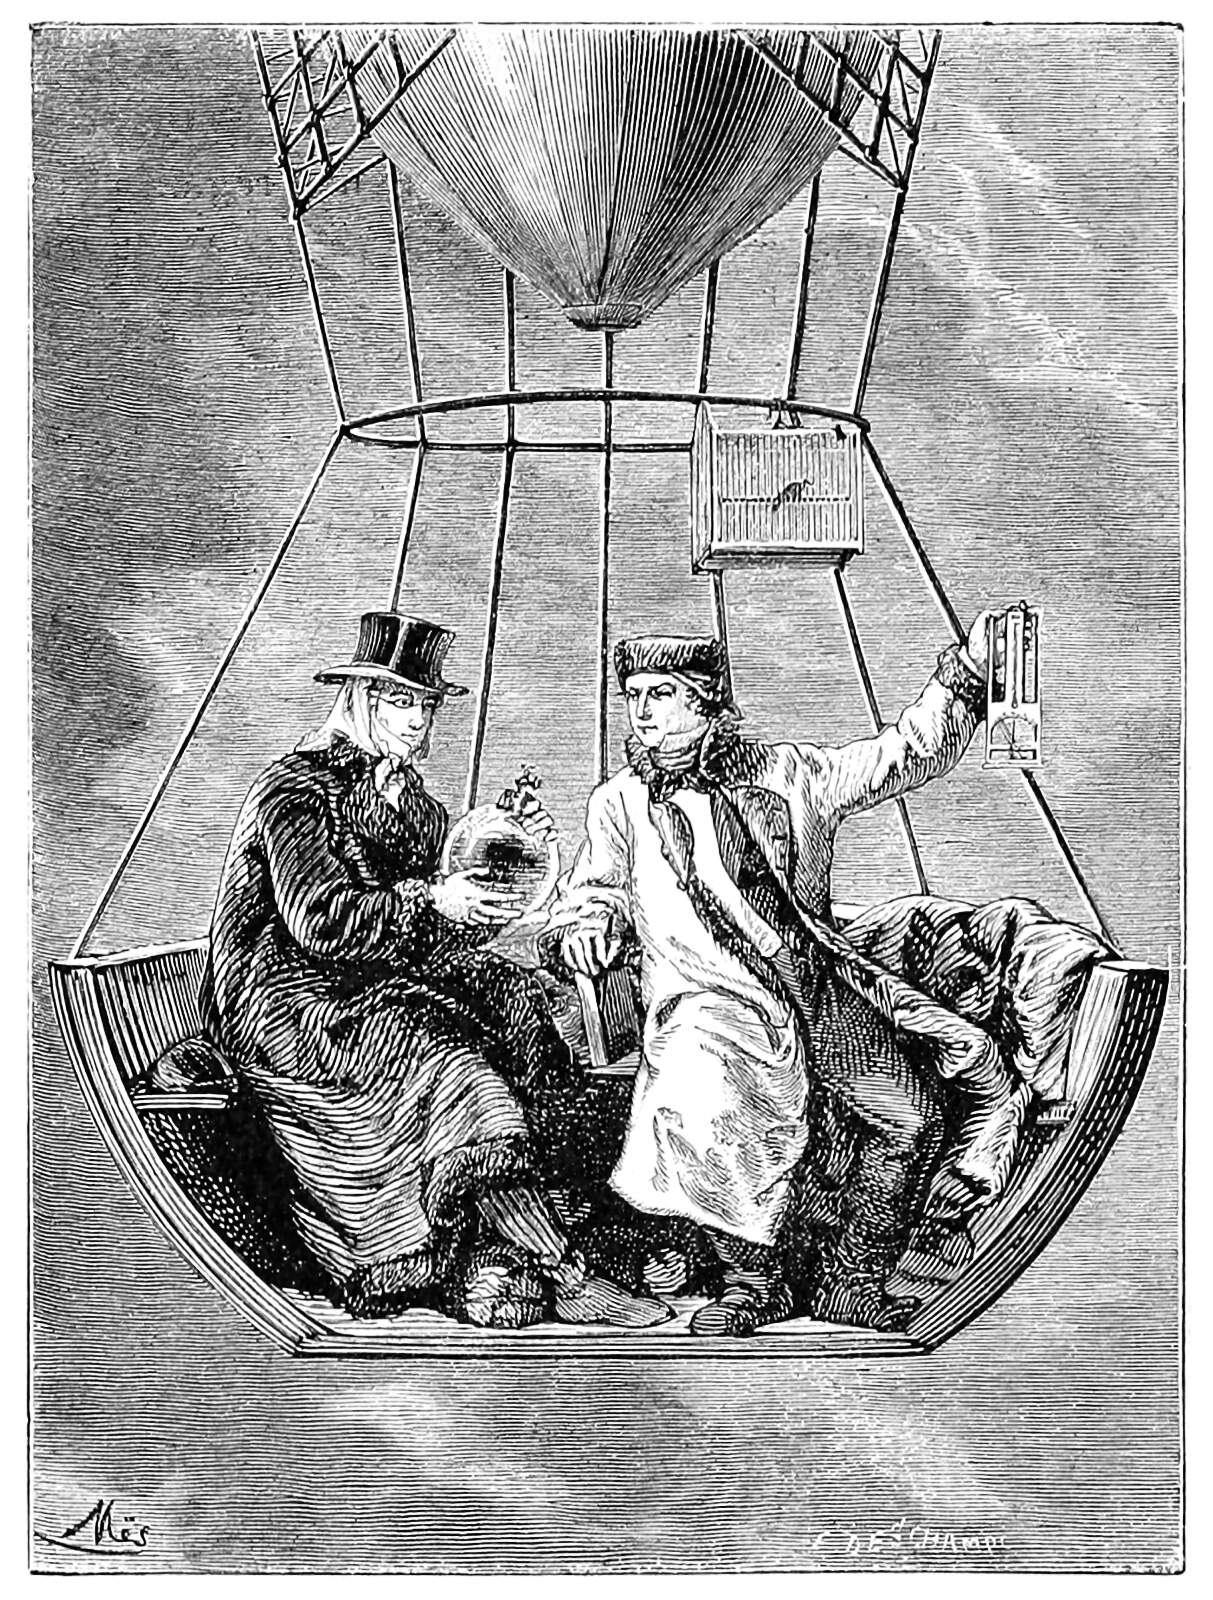 Two men float in a balloon